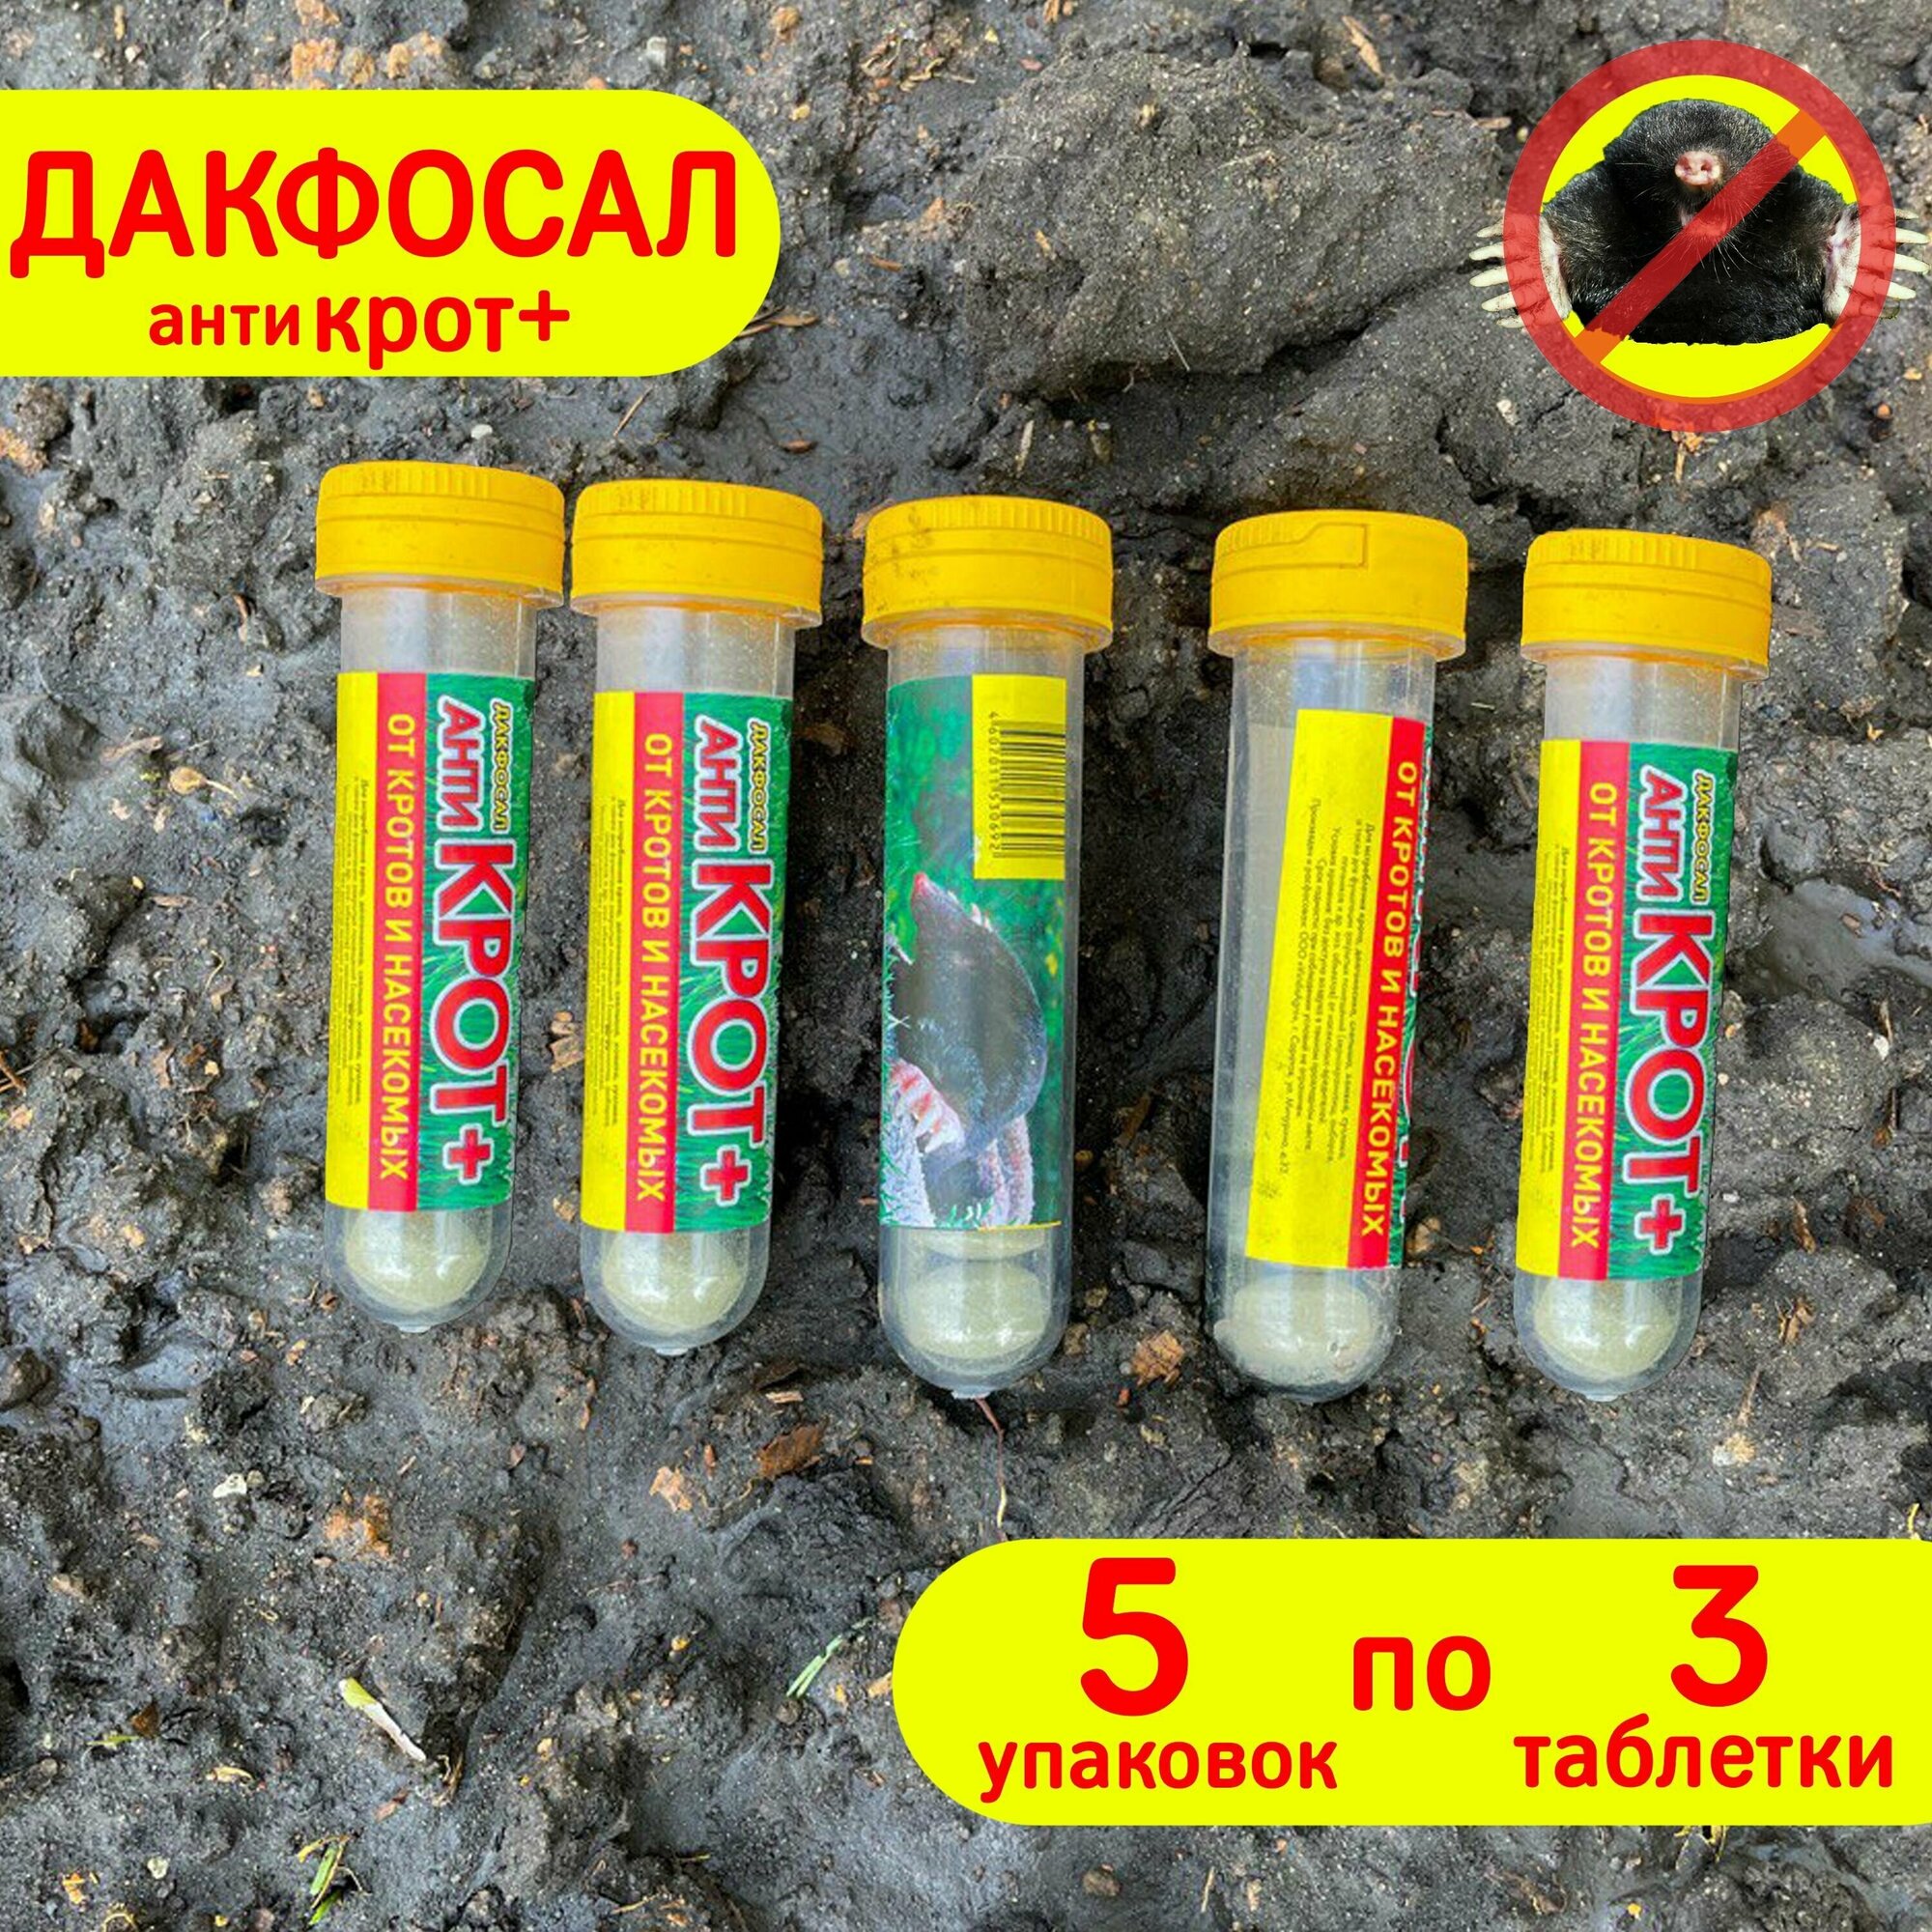 Дакфосал Антикрот средство защиты от грызунов 5 упаковок по 3 таблетки - фотография № 3